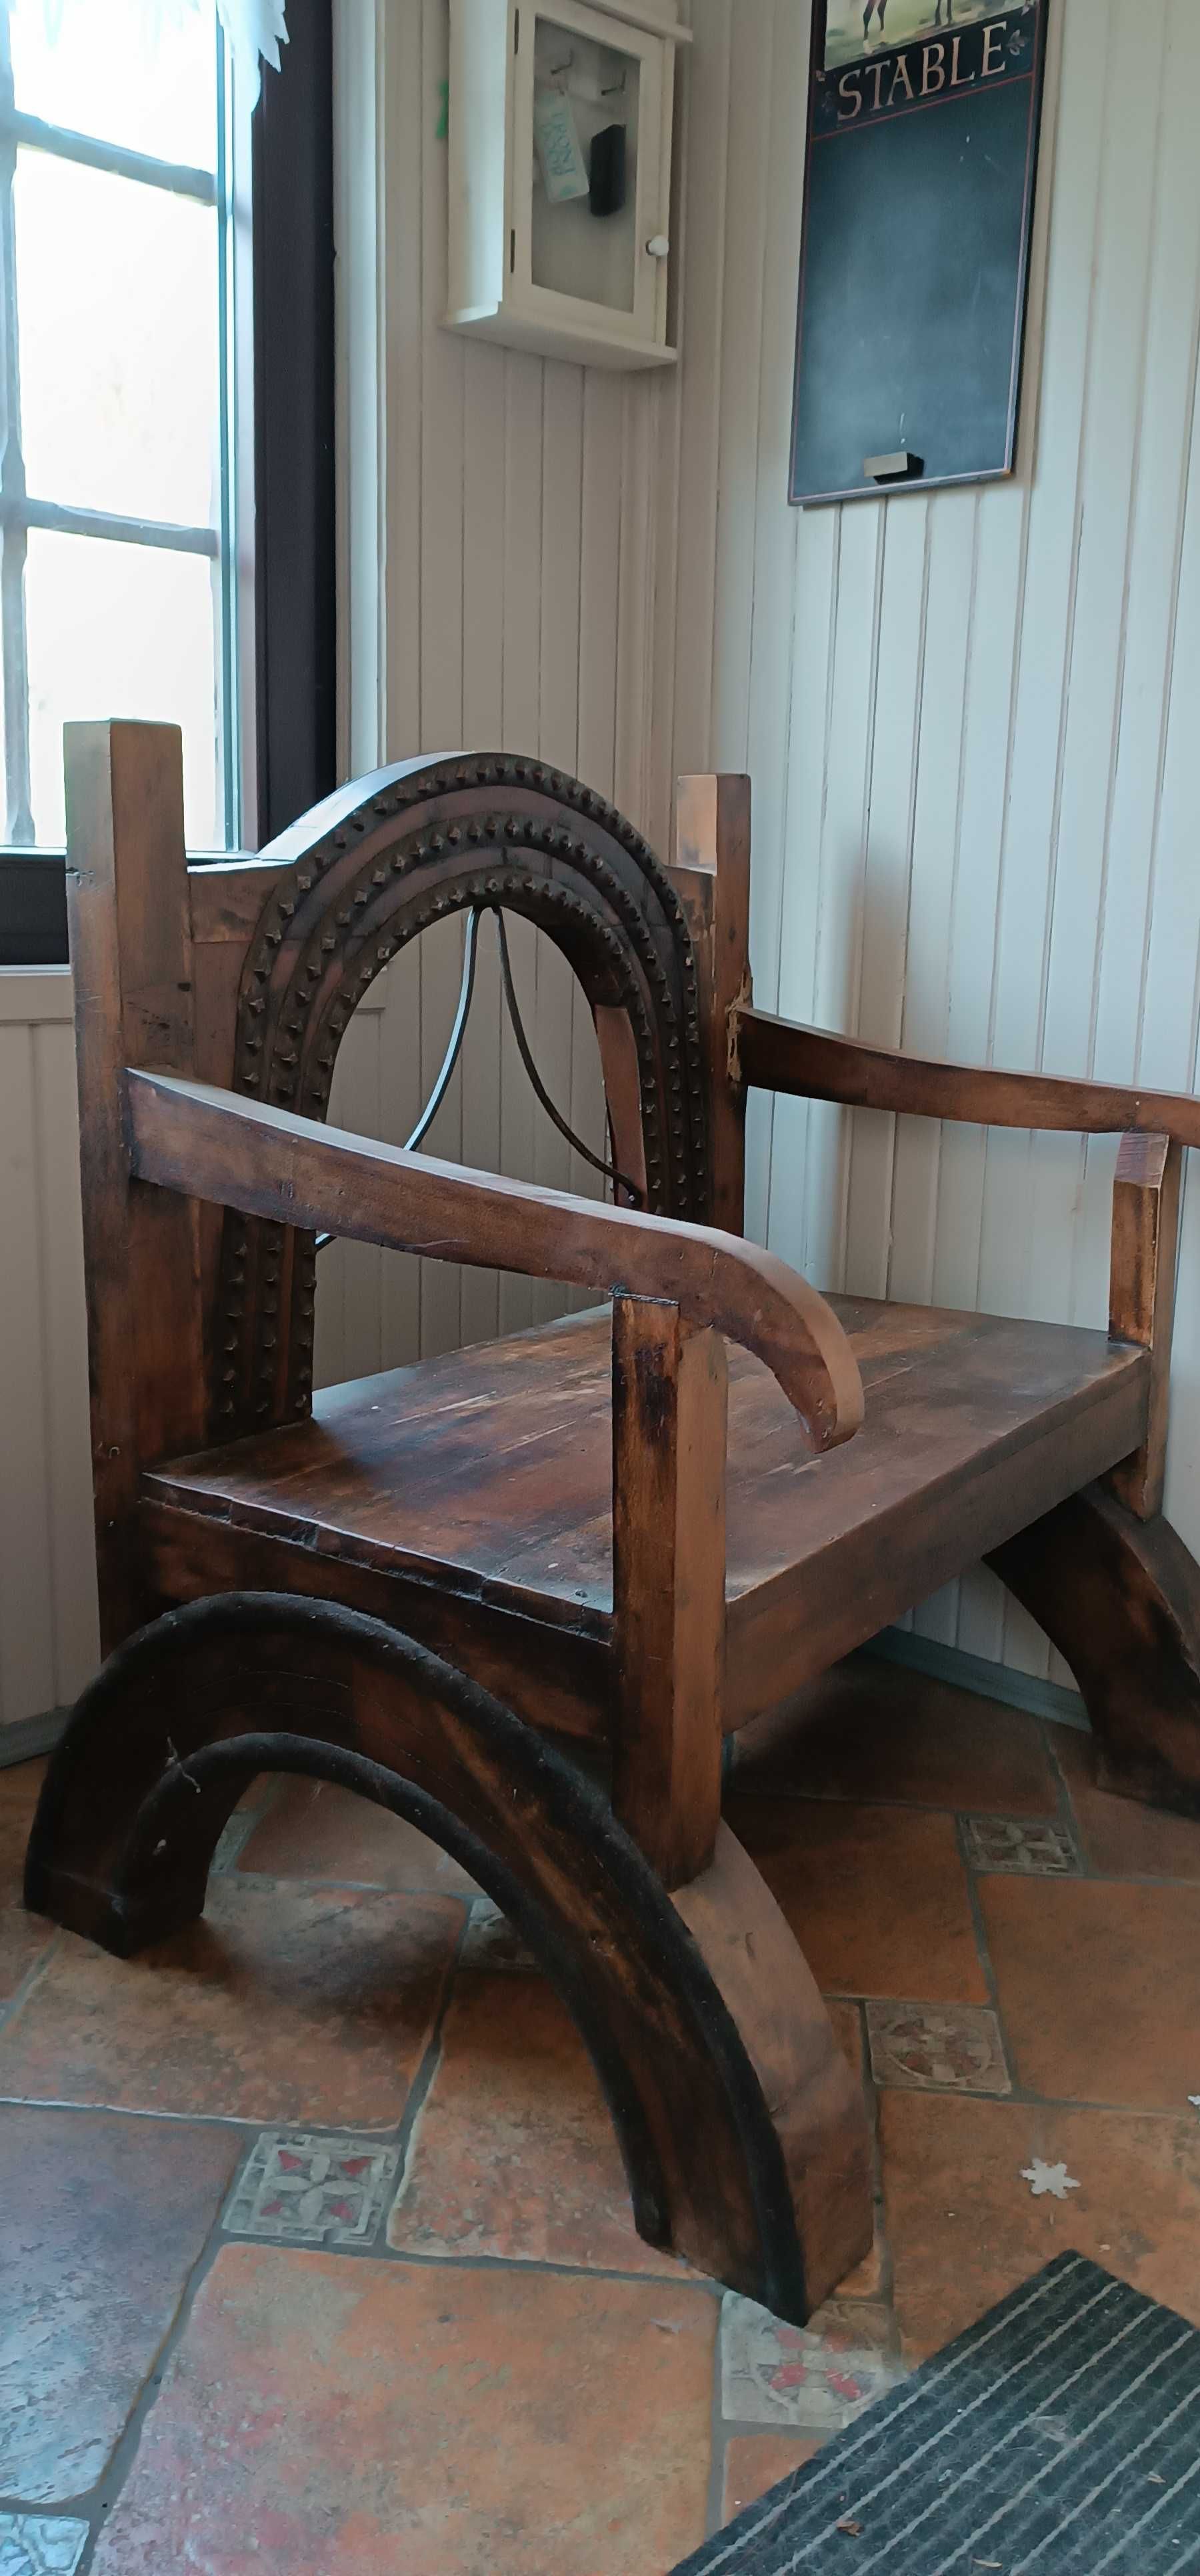 Indyjska ławka krzesło kolonialne ozdobne